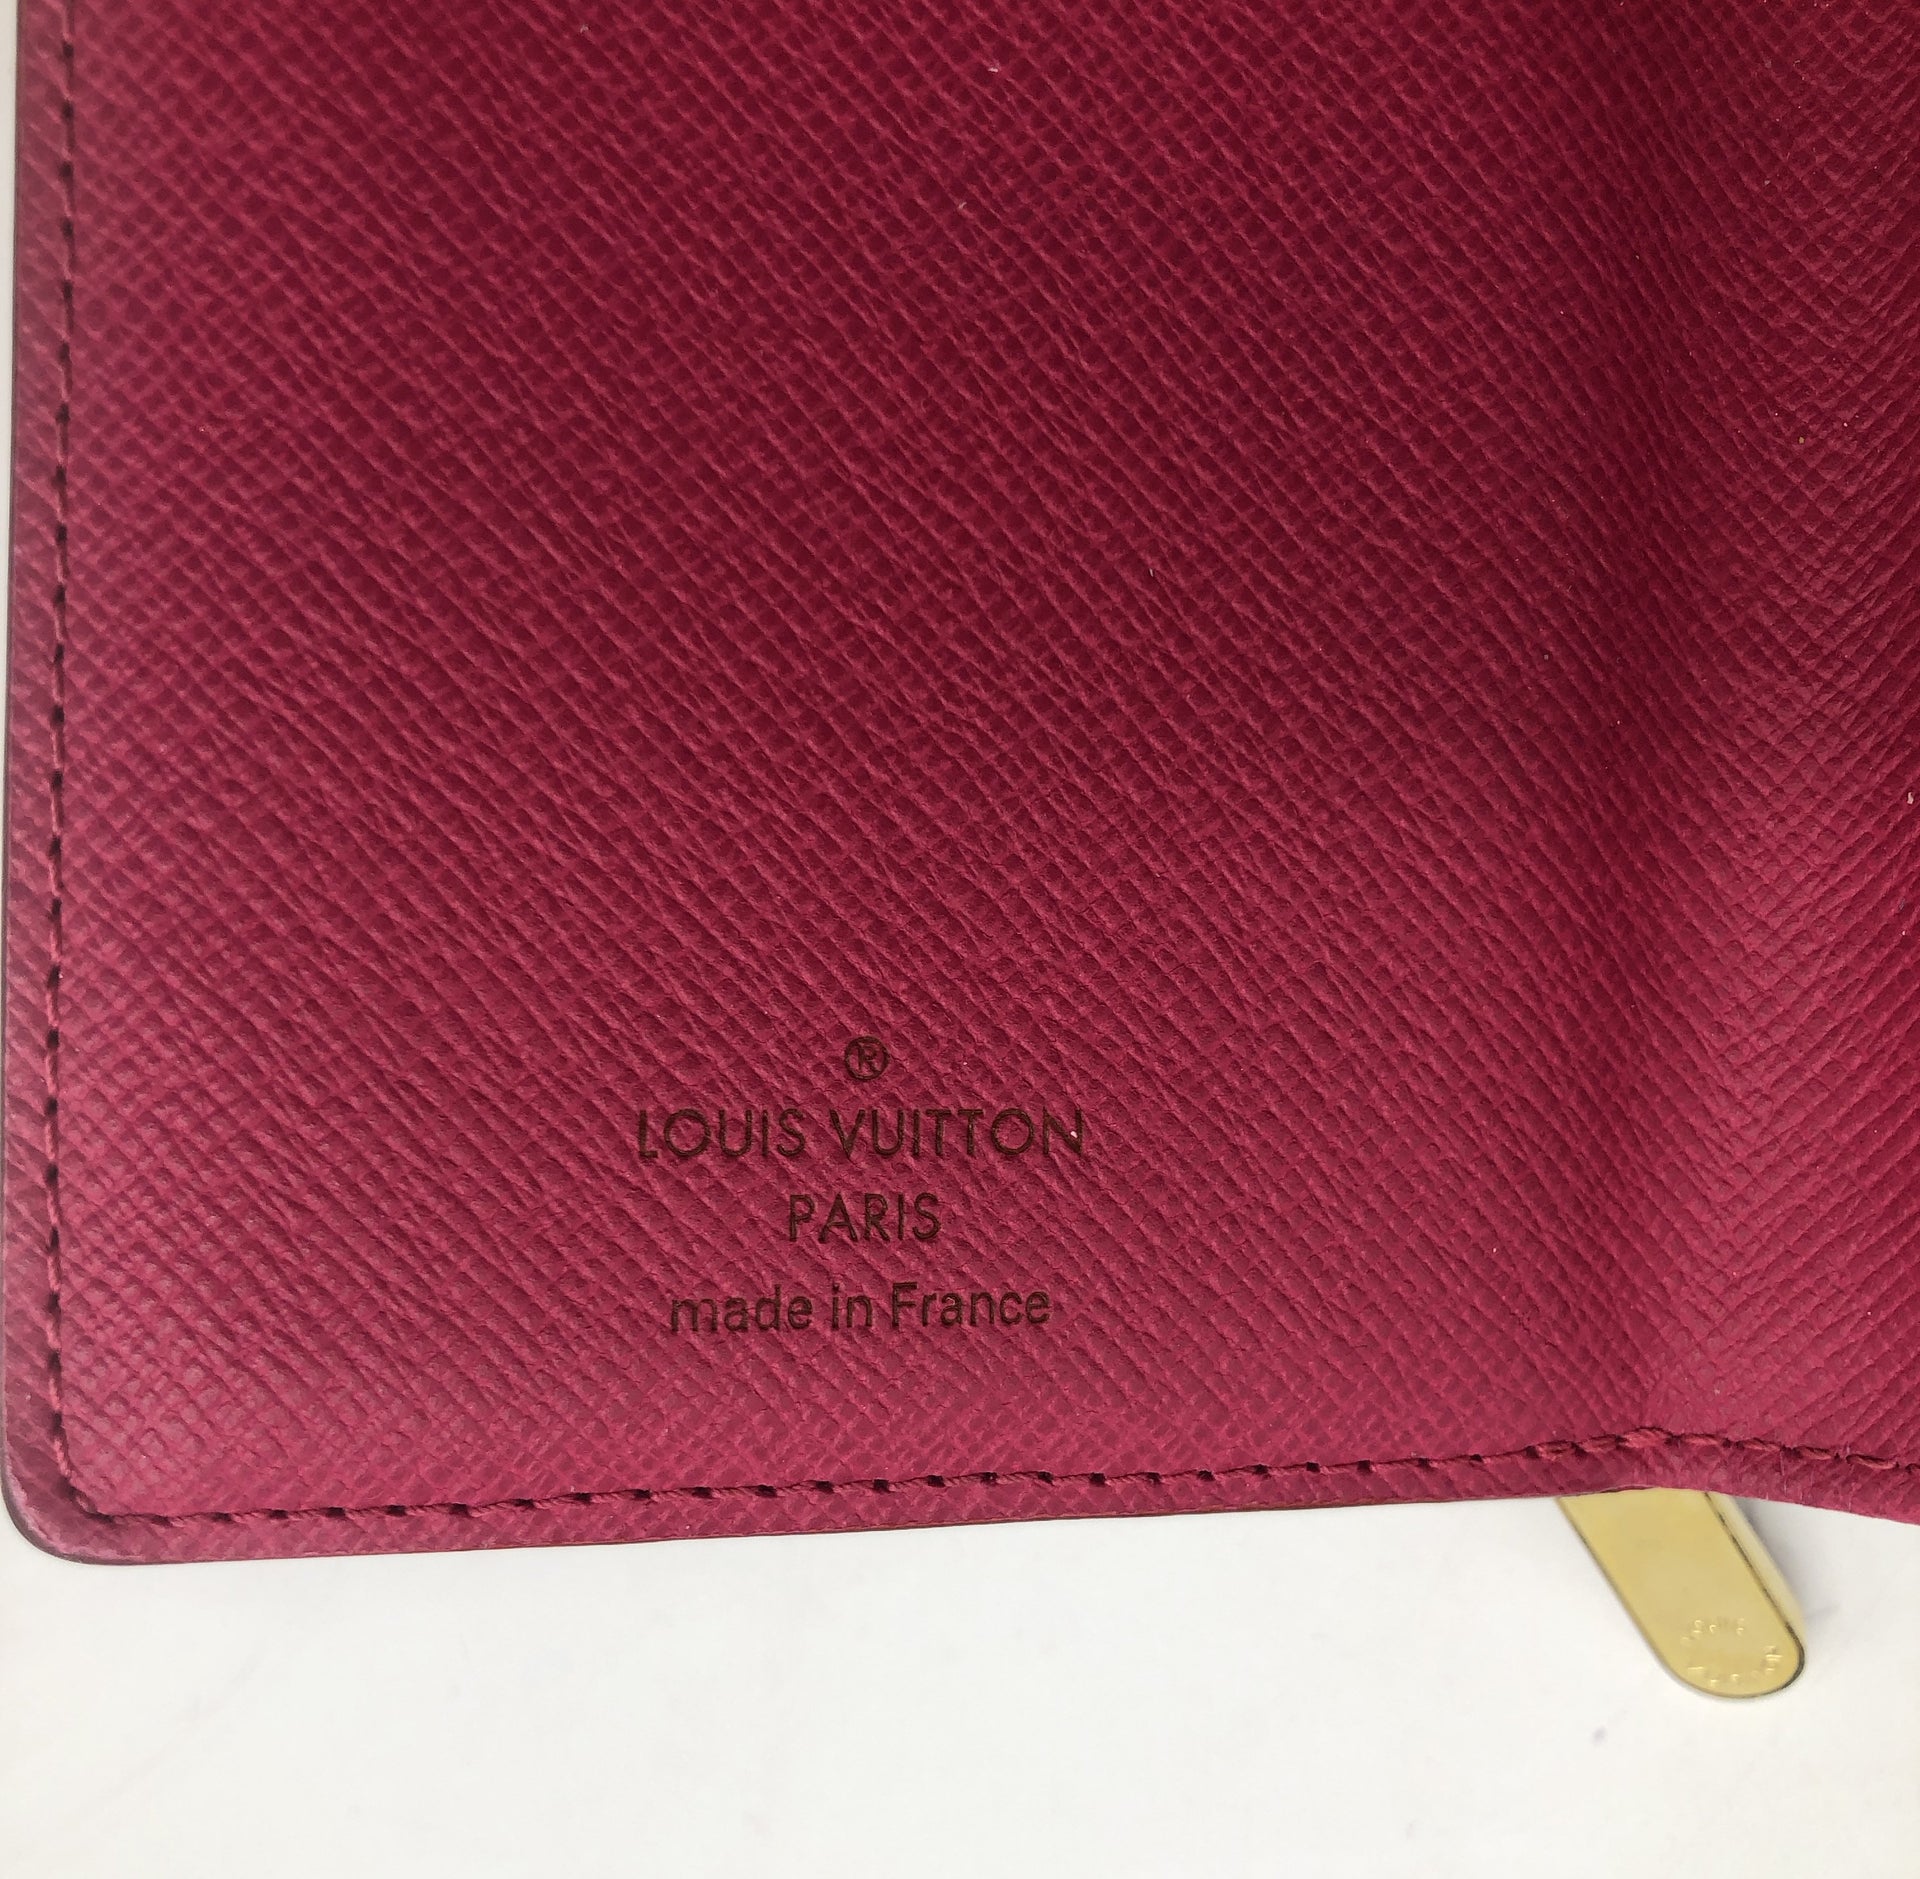 100% Authentic Louis Vuitton M58014 Monogram Multicolor Koala Wallet